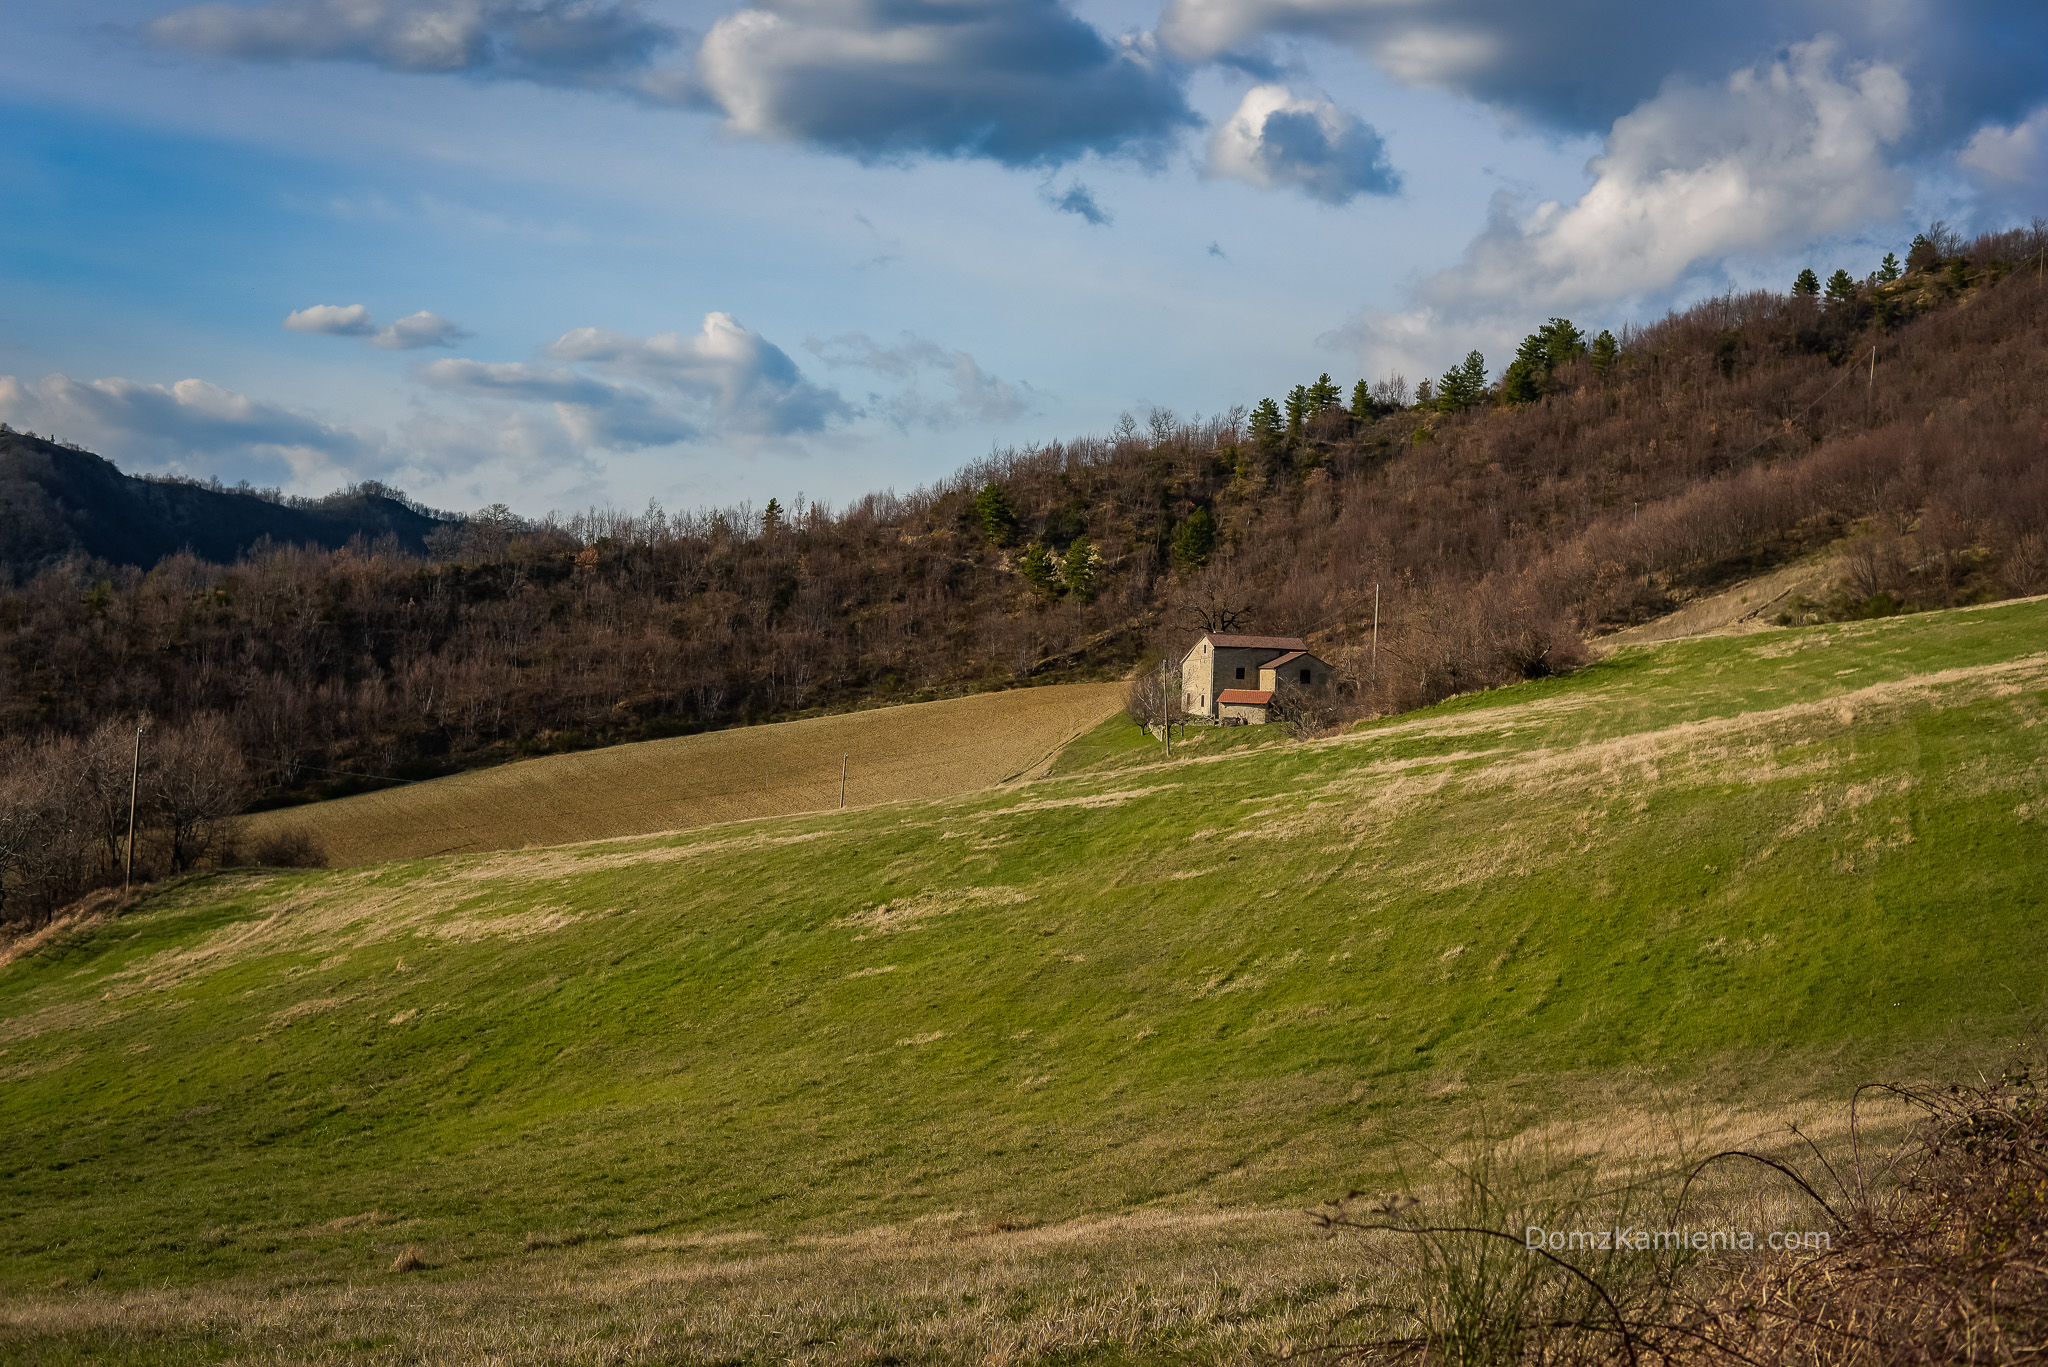 Dom z Kamienia blog Kasi Nowackiej o życiu w Toskanii